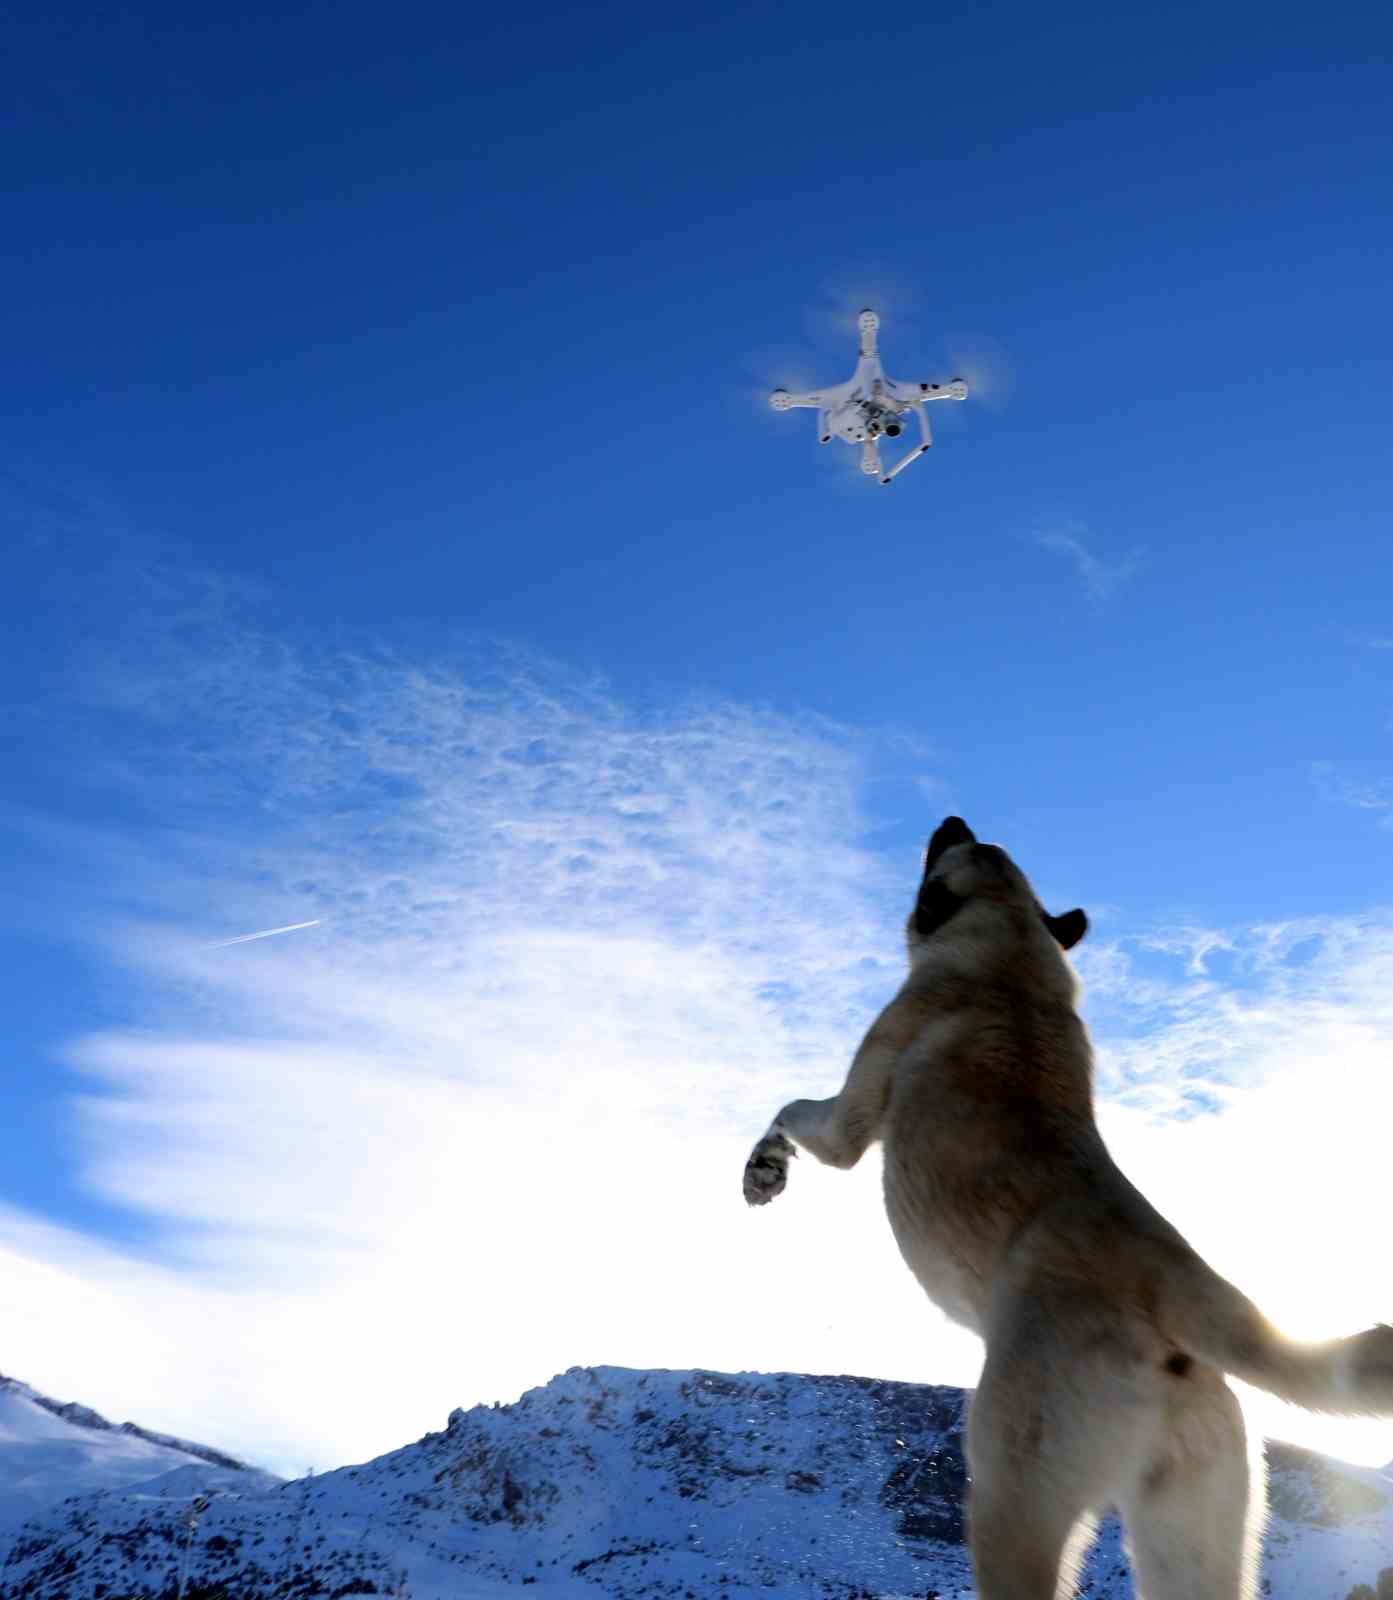 Köpeğin havadaki droneyi yakalamaya çalışmasıyla ilginç bir görüntü oluştu